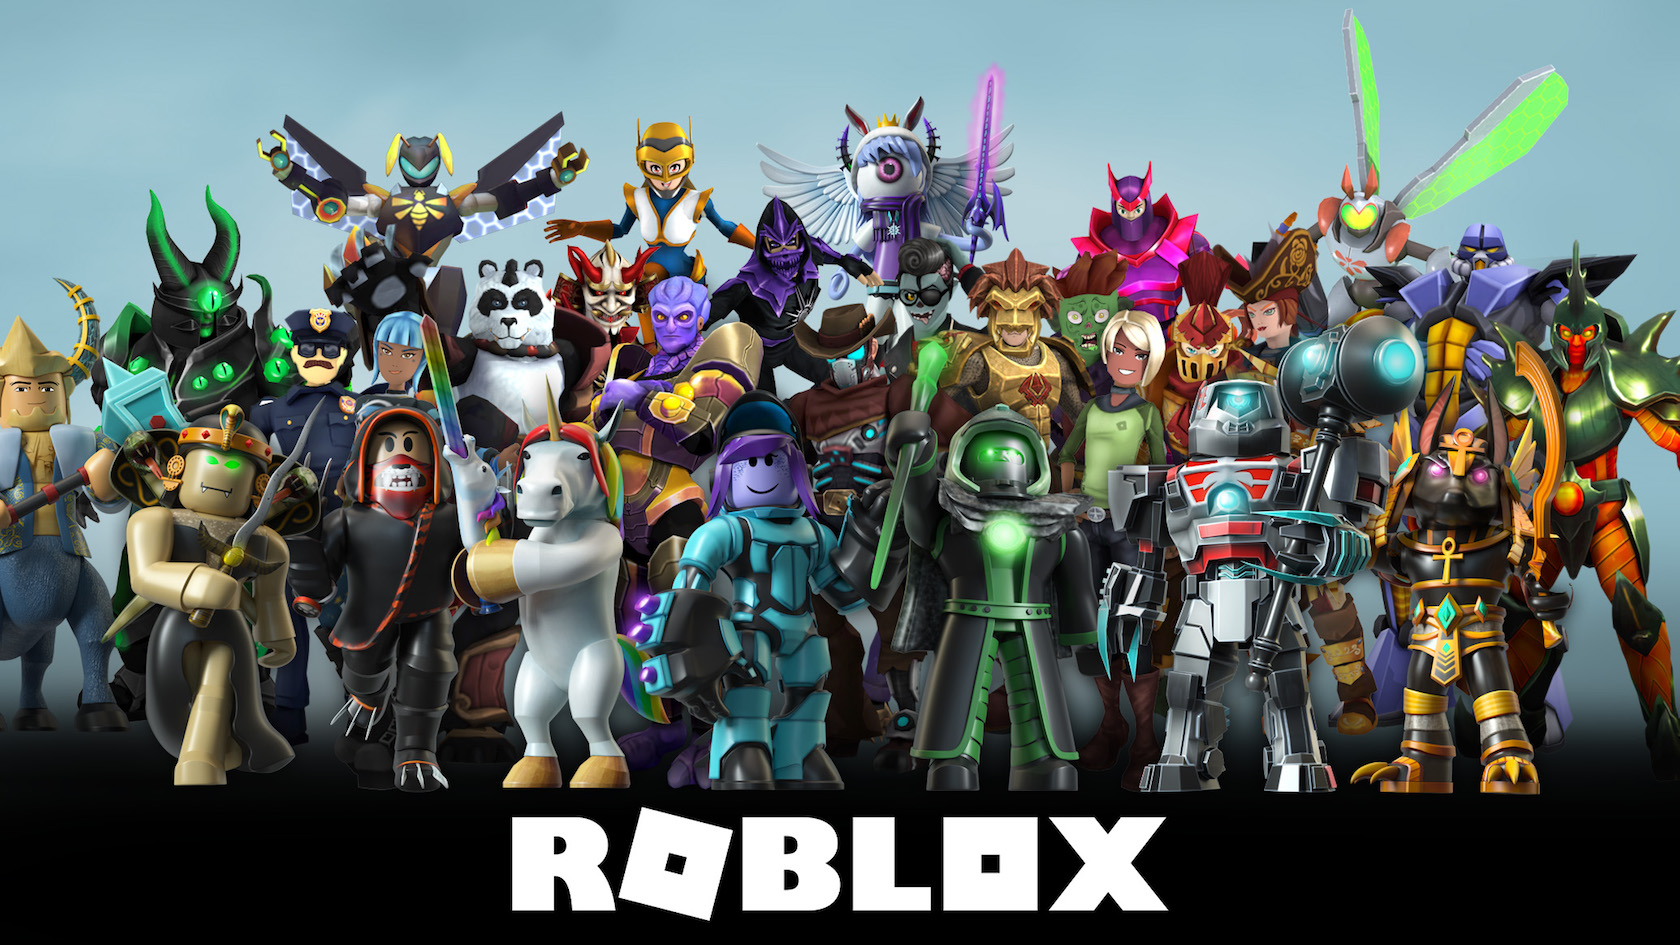 Roblox завоевывает 100 миллионов активных пользователей ежемесячно как игровая платформа для детей и подростков